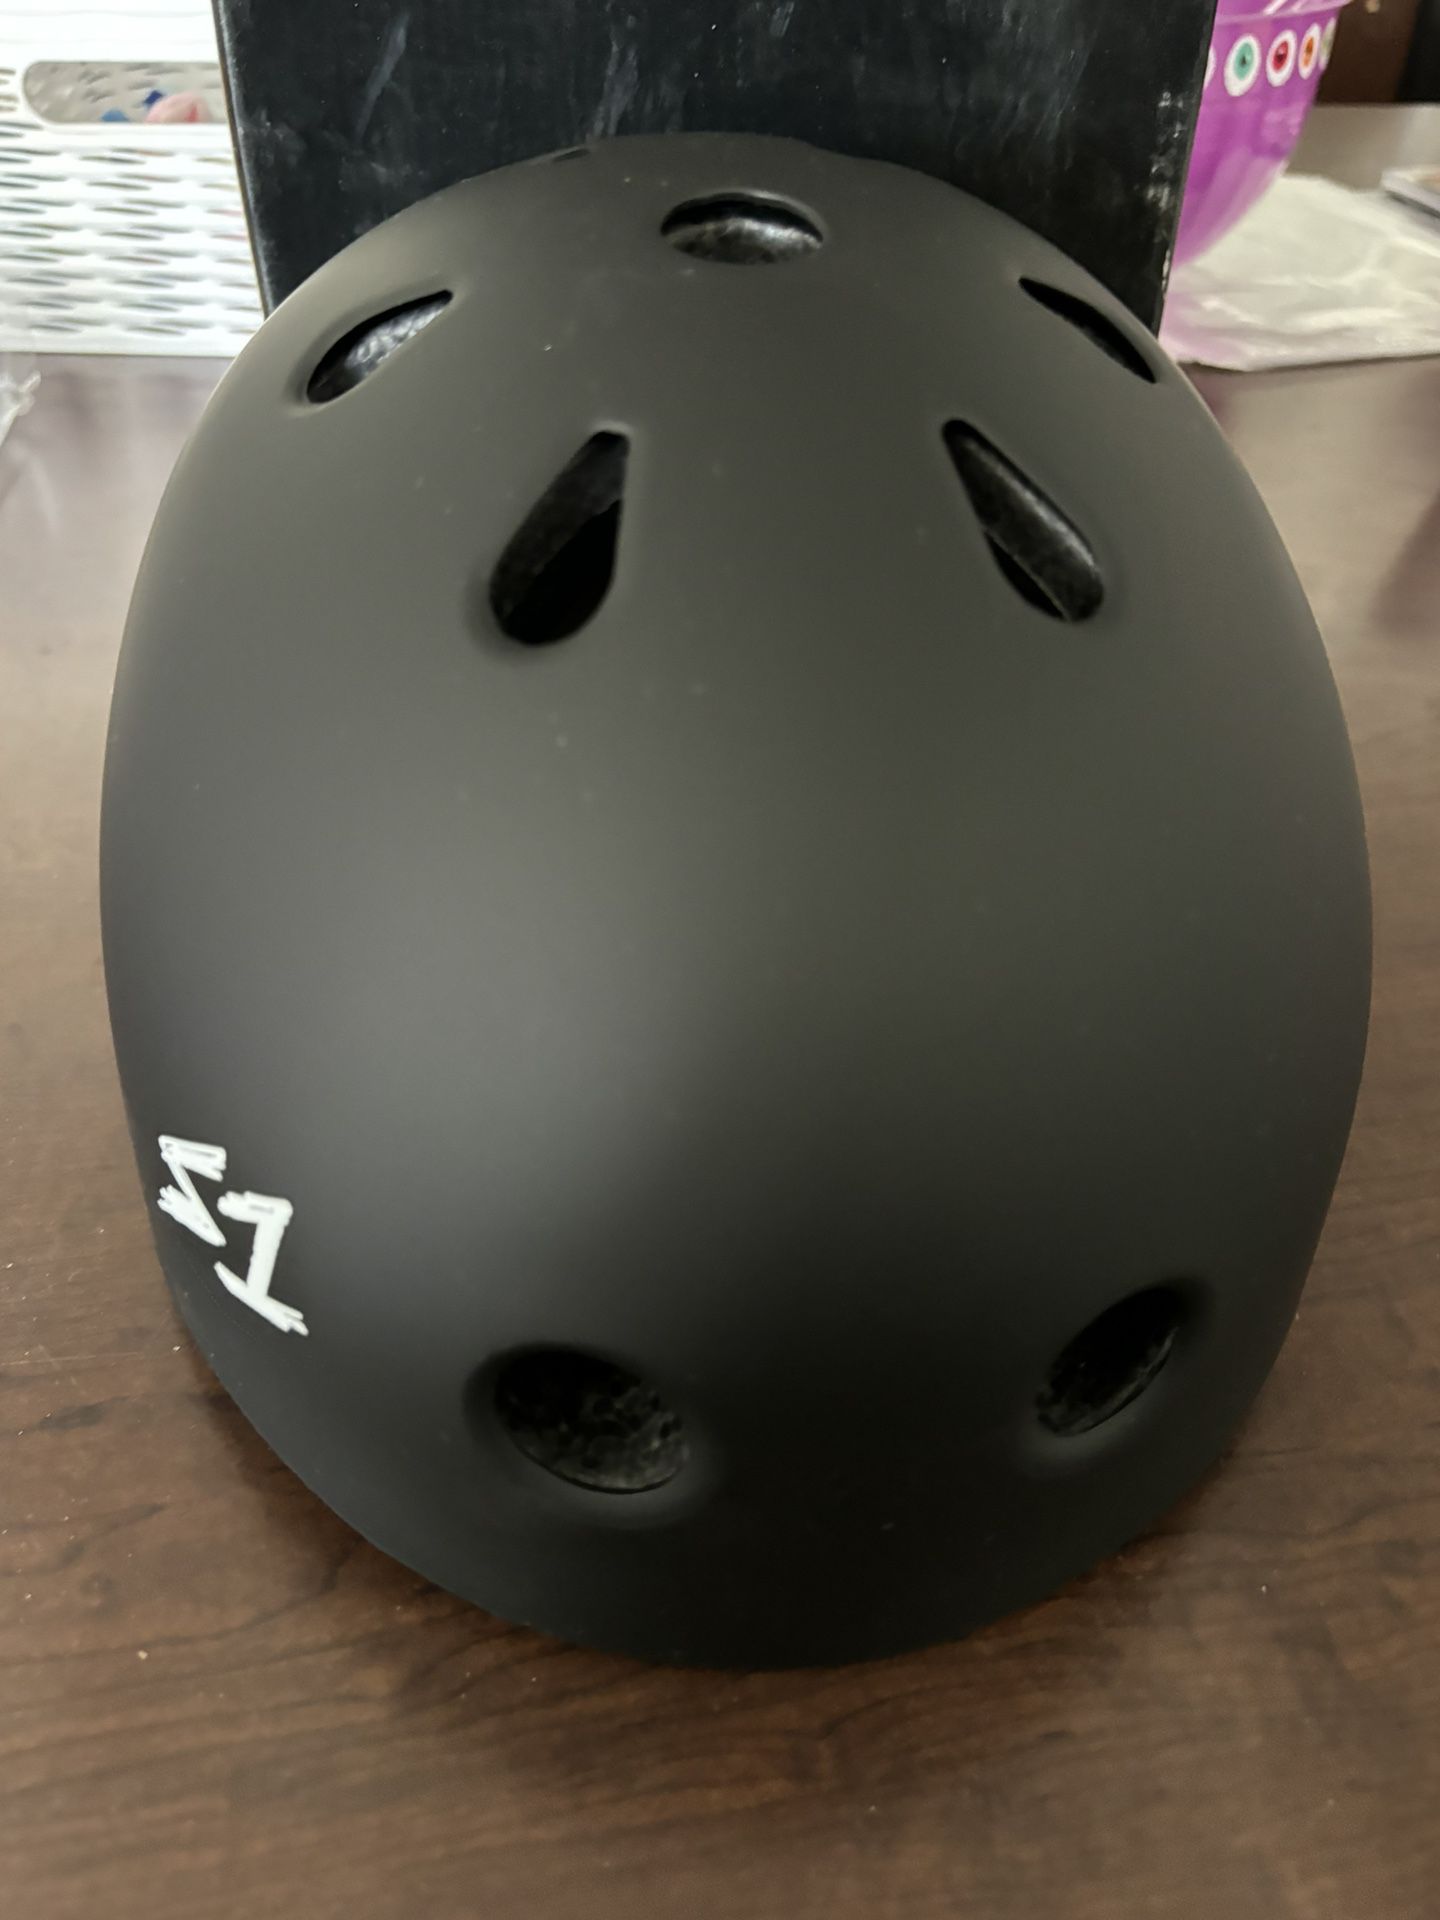 S1 Lifer Helmet for Skateboarding, BMX, and Roller Skating